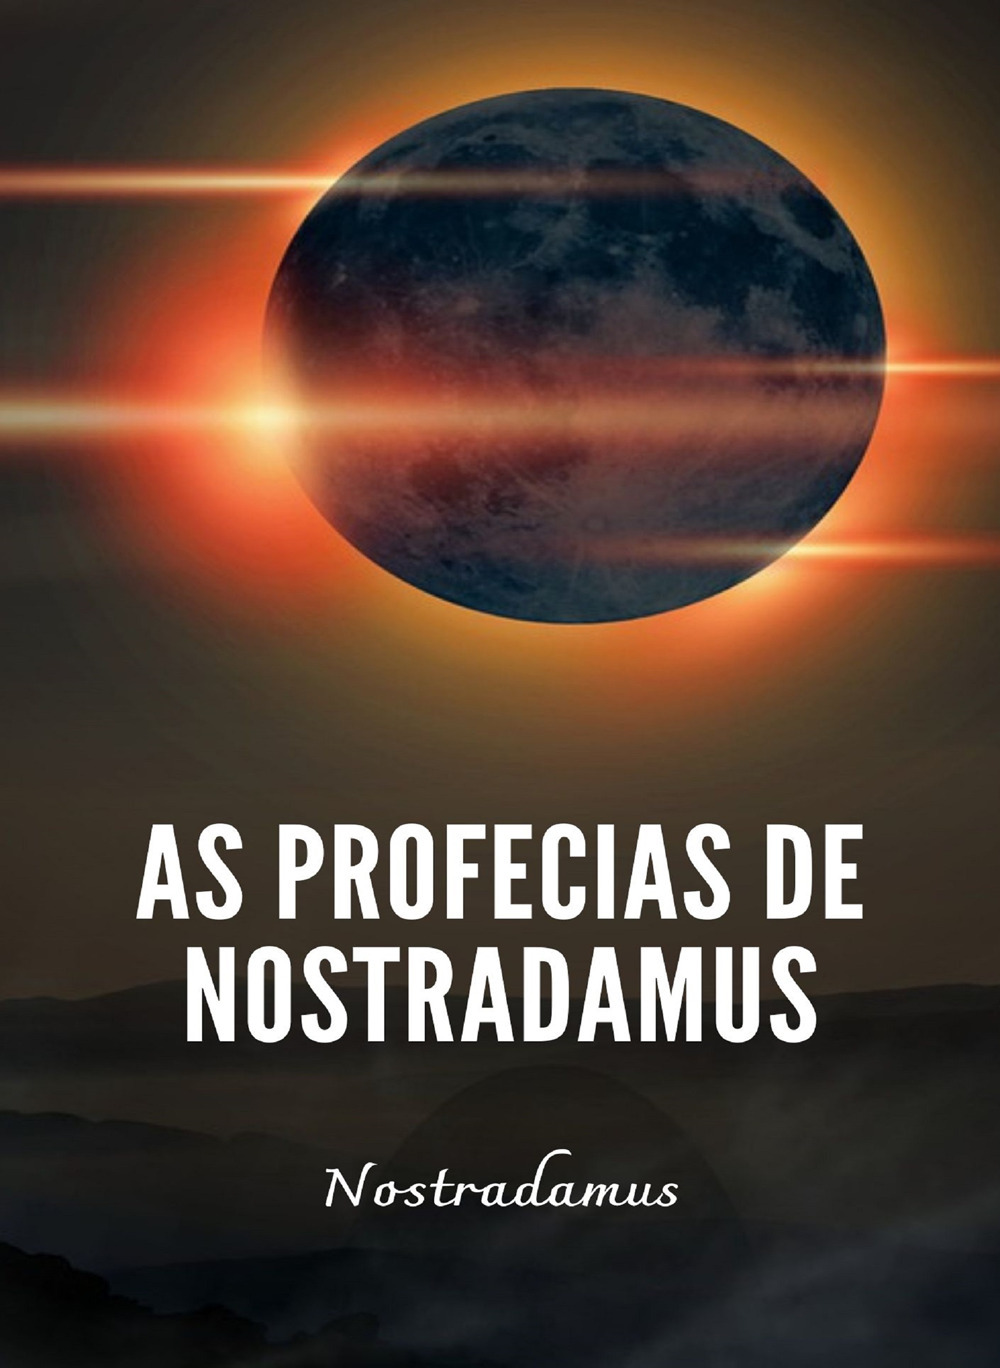 As profecias de Nostradamus. Nuova ediz.